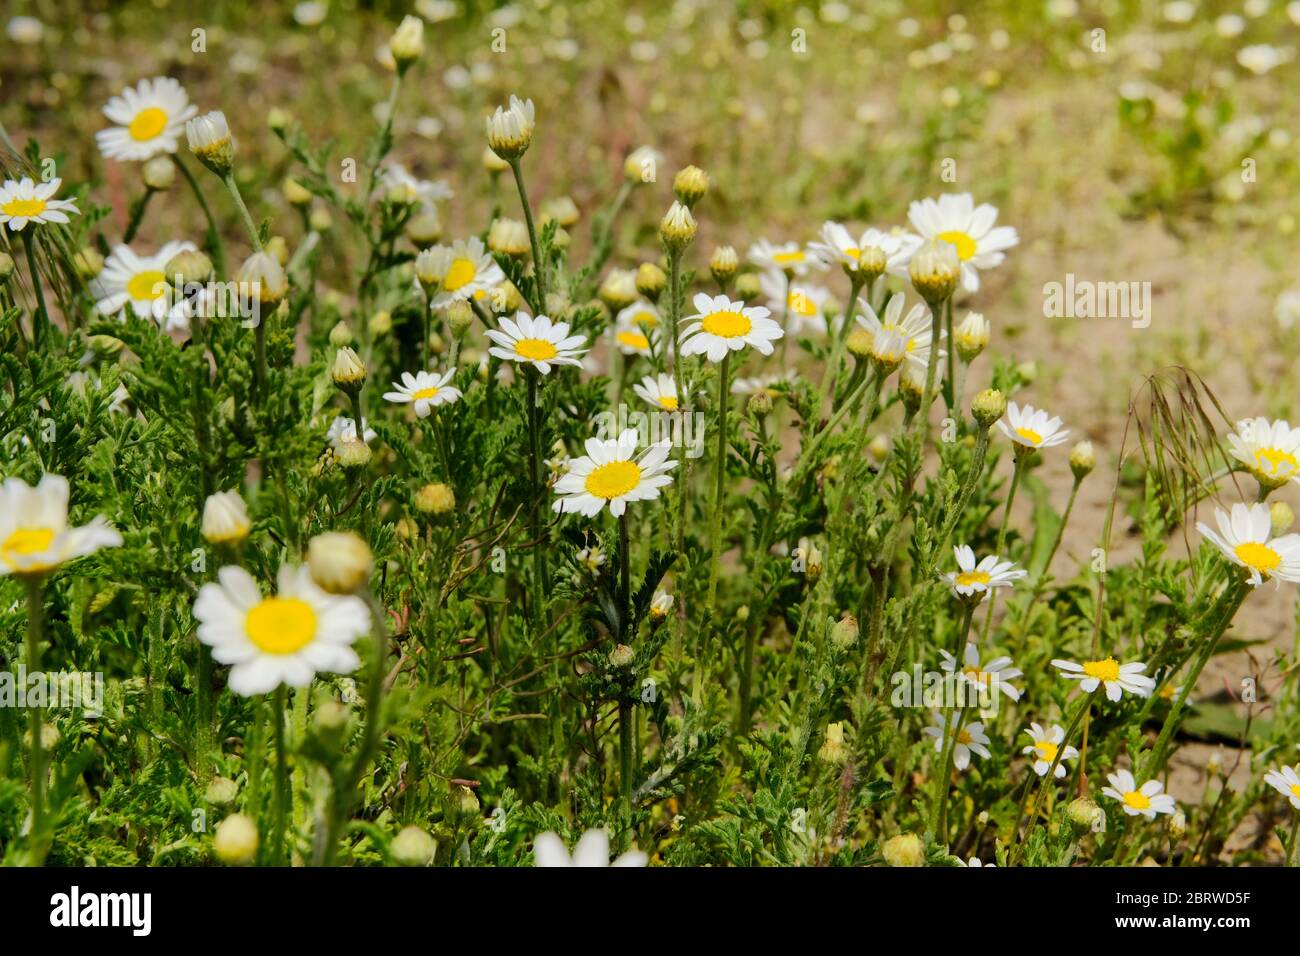 Margaritas en el prado romántico de verano. Oxeye daisy, Leusanthemum vulgare. Flores de manzanilla con pétalos blancos. Mucha hierba medicinal. Foto de stock